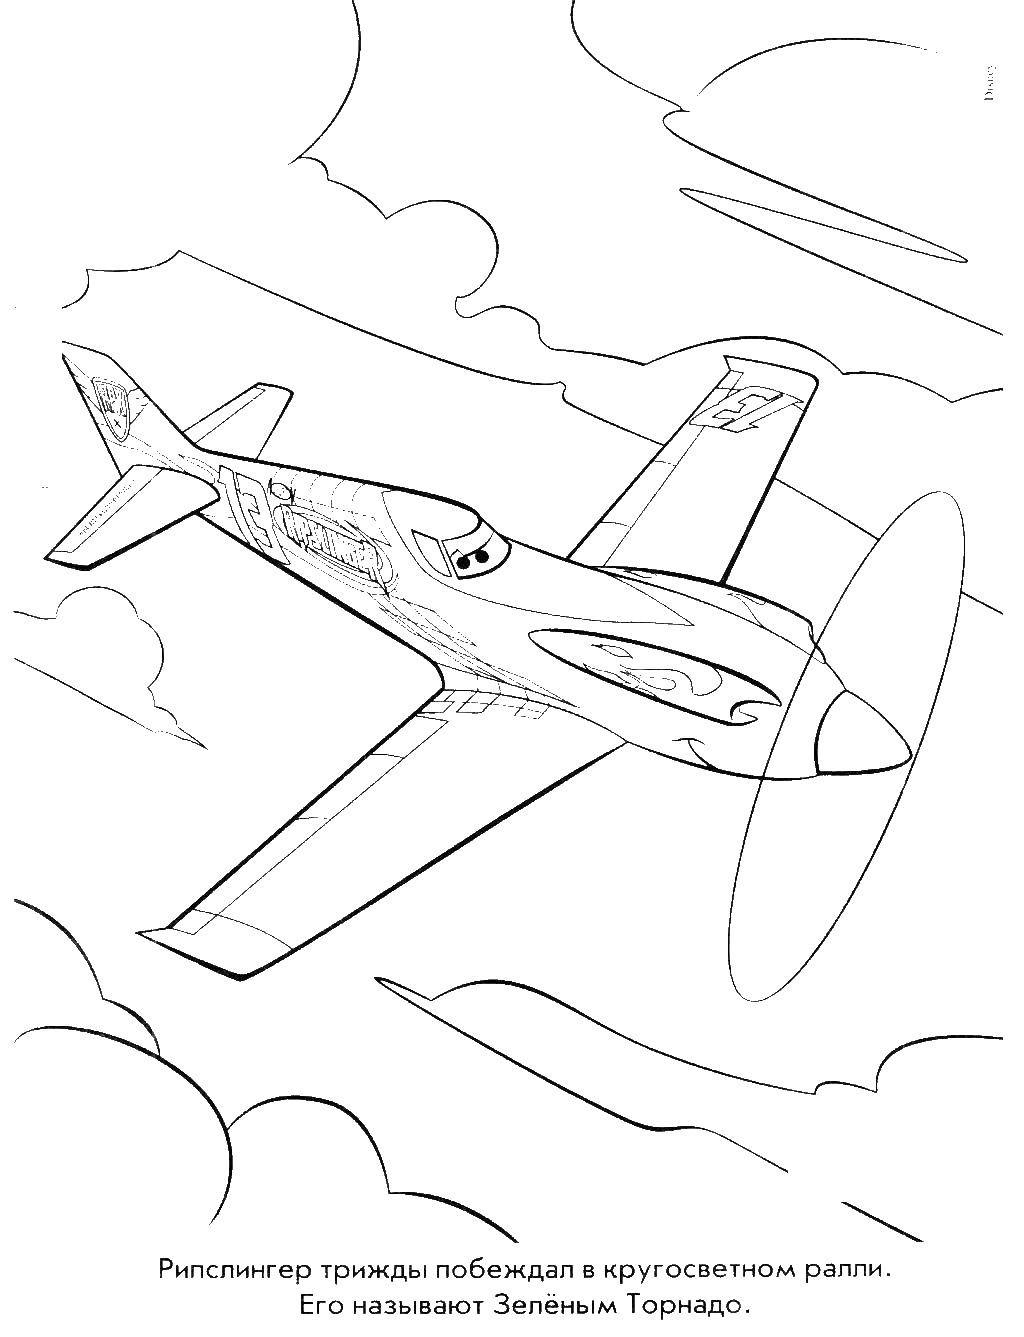 Название: Раскраска Самолет рипслингер. Категория: раскраски. Теги: Самолет, Дасти.